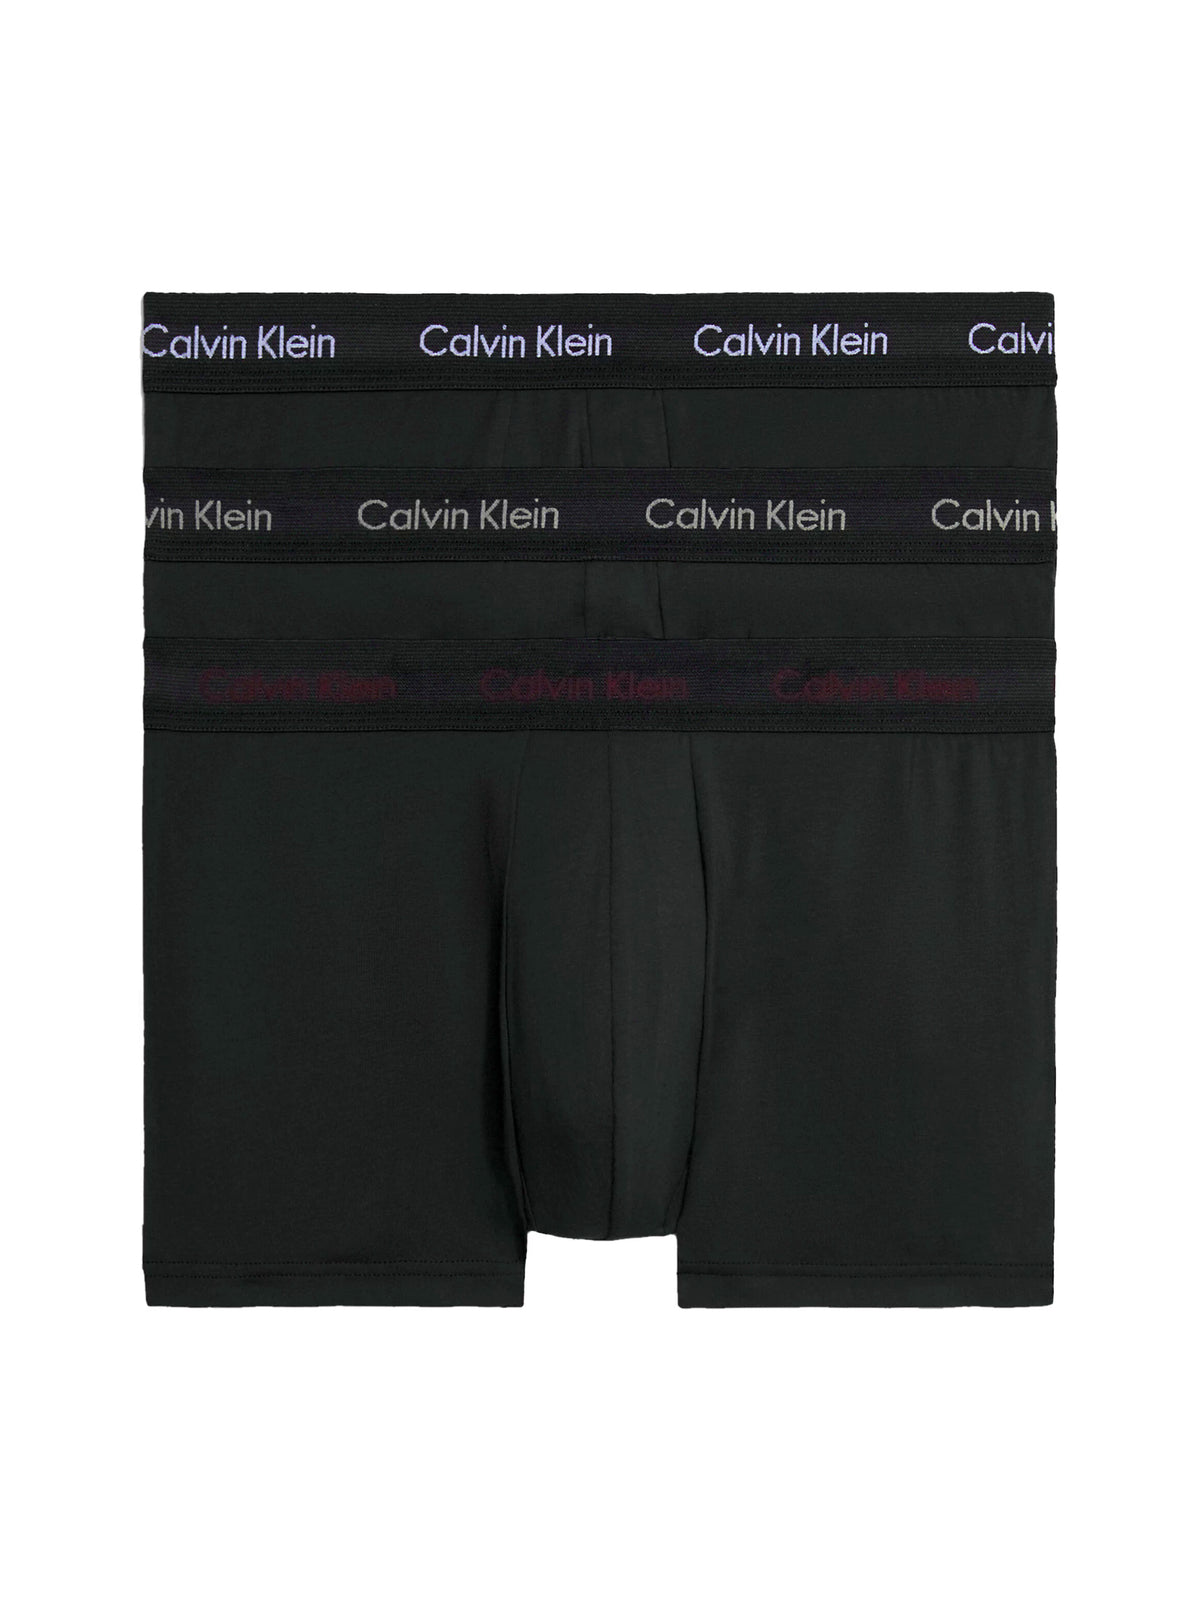 Mens Calvin Klein Boxer Shorts Low Rise Trunks 3 Pack, 01, U2664G, B- White, TWNY Port, Porpoise Logos